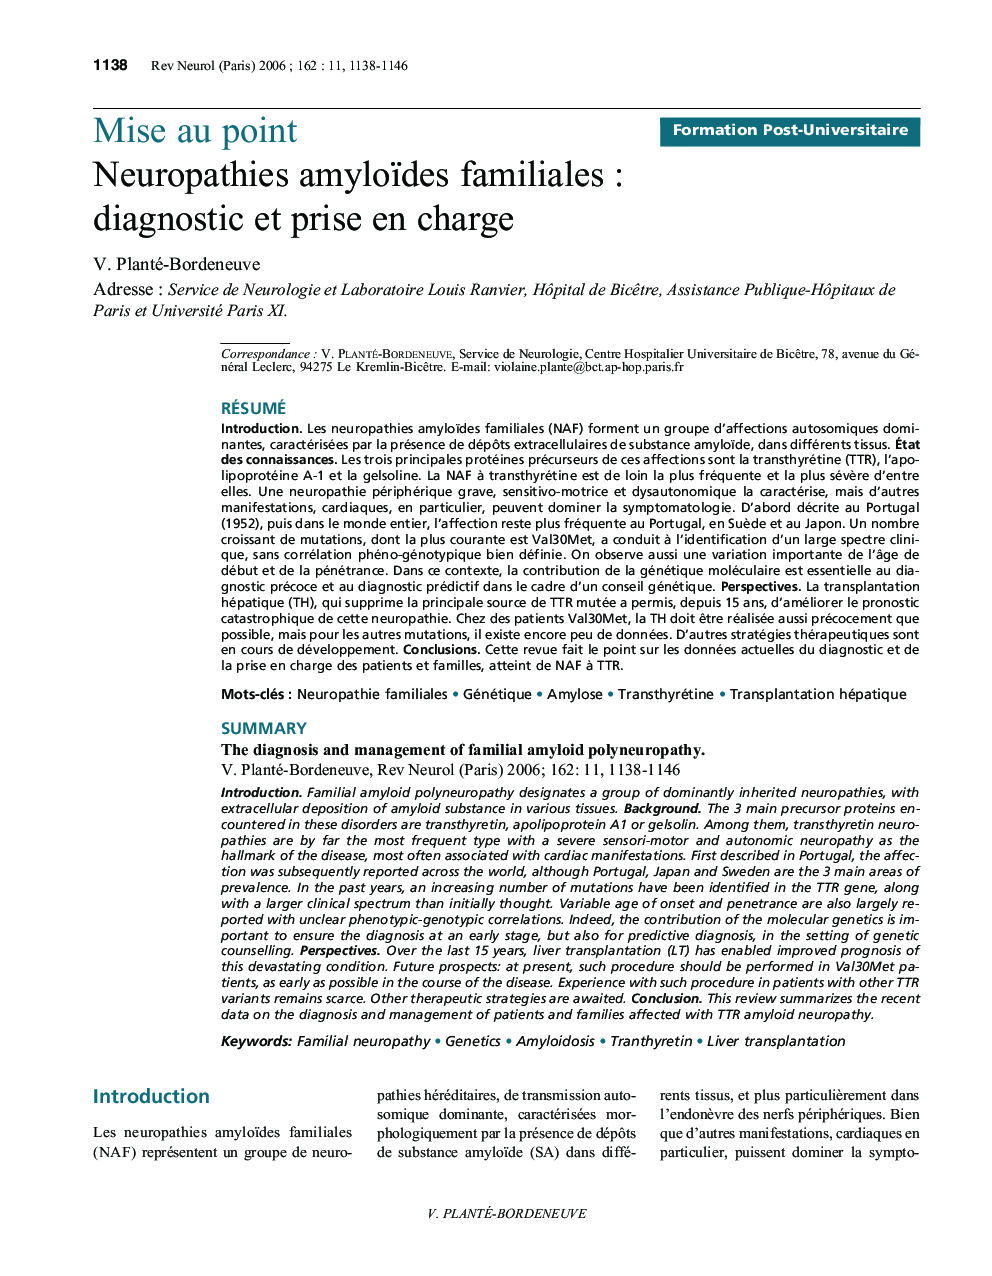 Neuropathies amyloïdes familiales : diagnostic et prise en charge